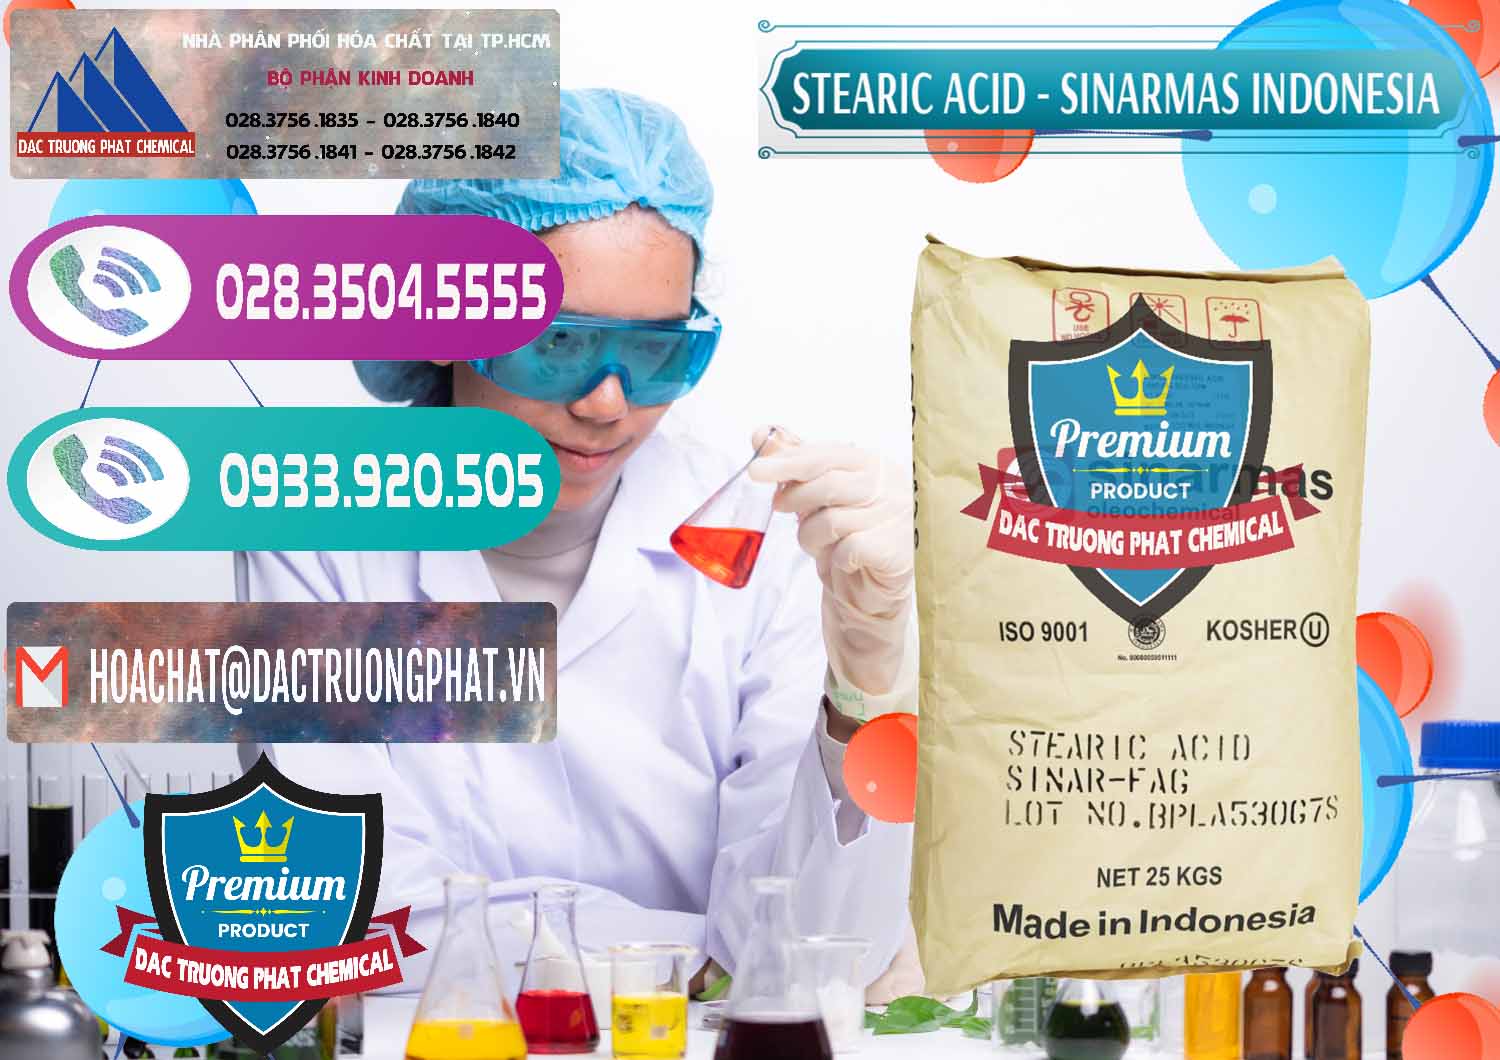 Cty bán và cung ứng Axit Stearic - Stearic Acid Sinarmas Indonesia - 0389 - Cty cung cấp _ phân phối hóa chất tại TP.HCM - hoachatxulynuoc.com